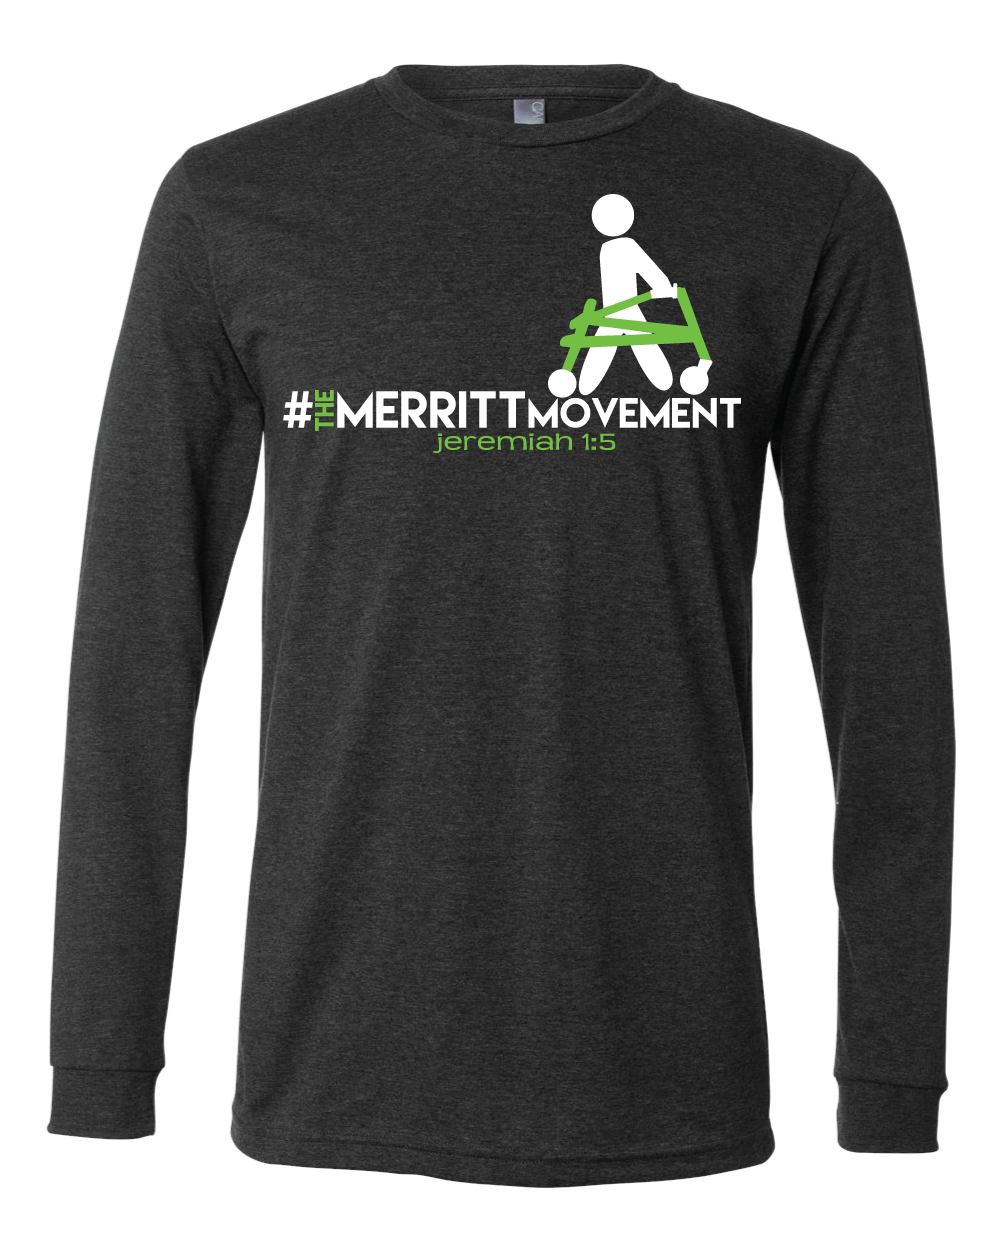 The Merritt Movement Official Long Sleeve T-Shirt